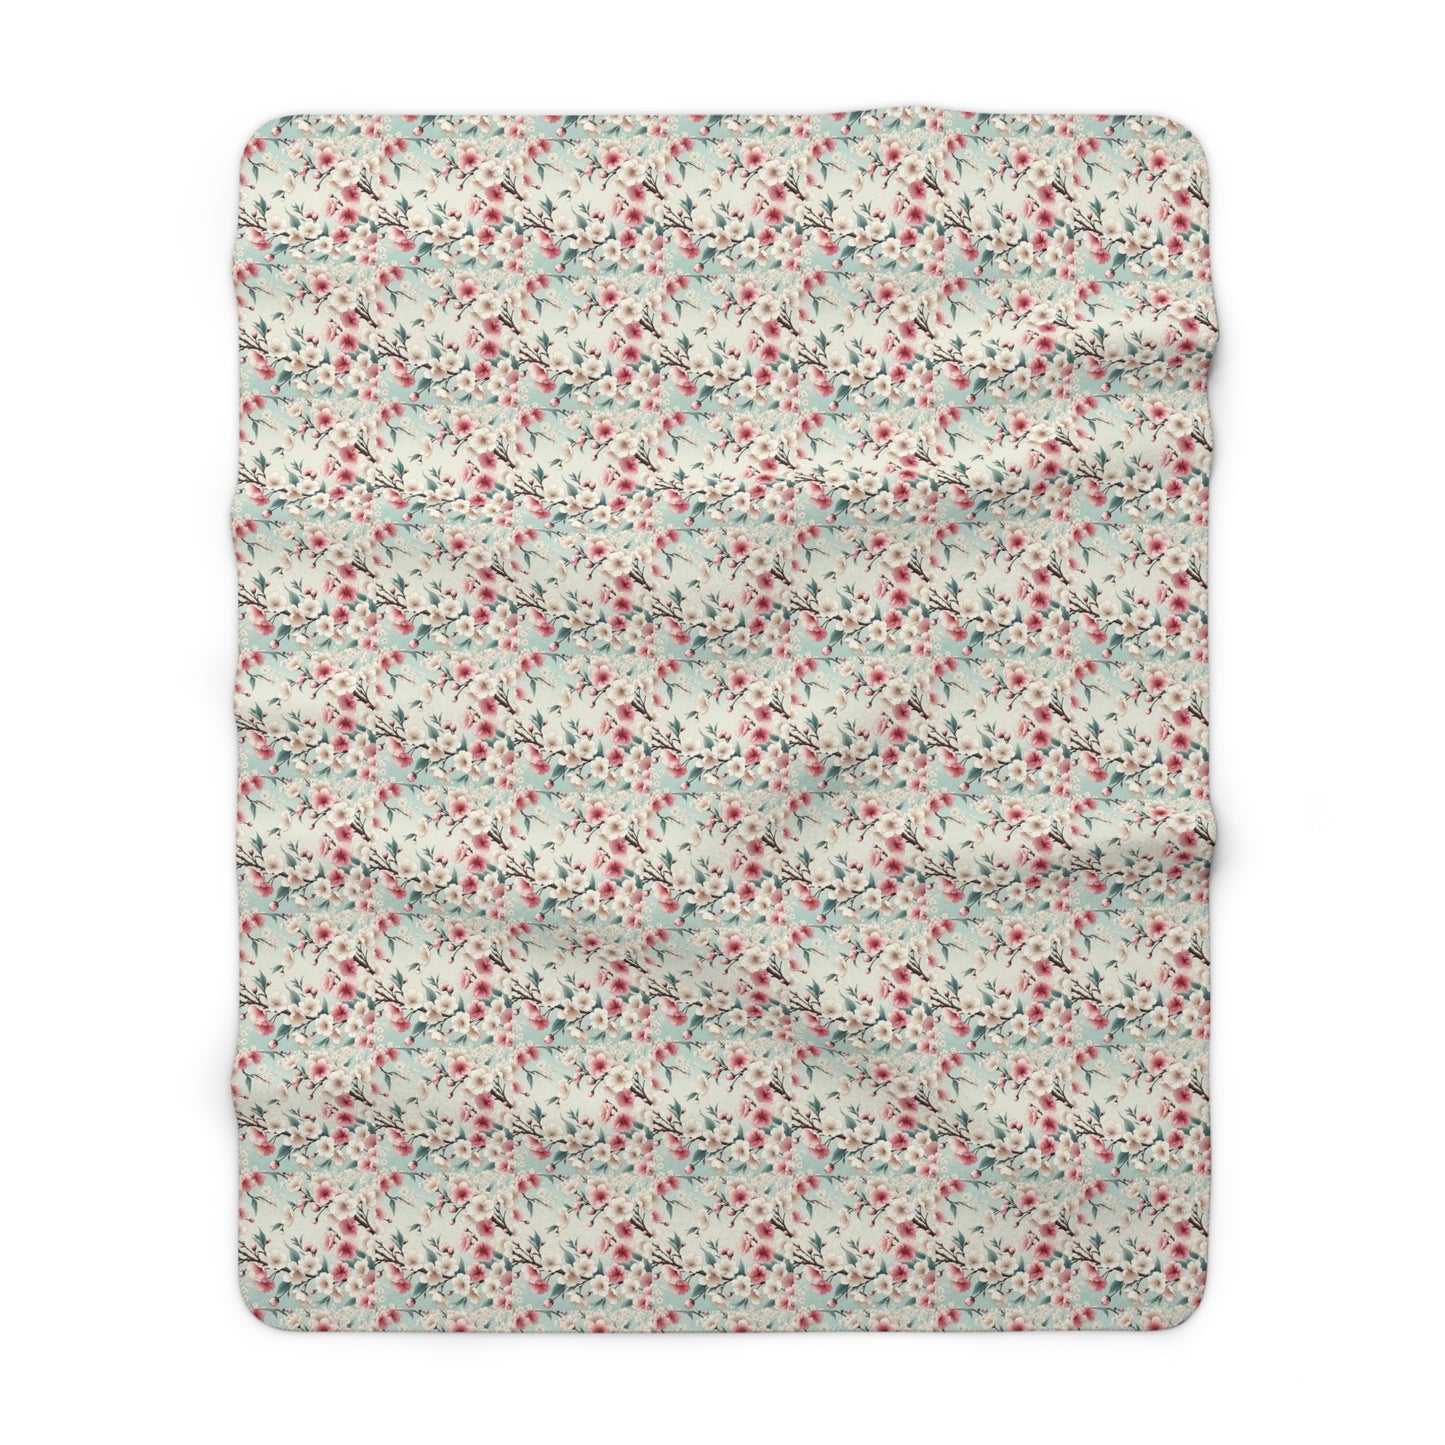 Springtime Sakura Serenity Sherpa Fleece Blanket - Japanese Cherry Blossom Design